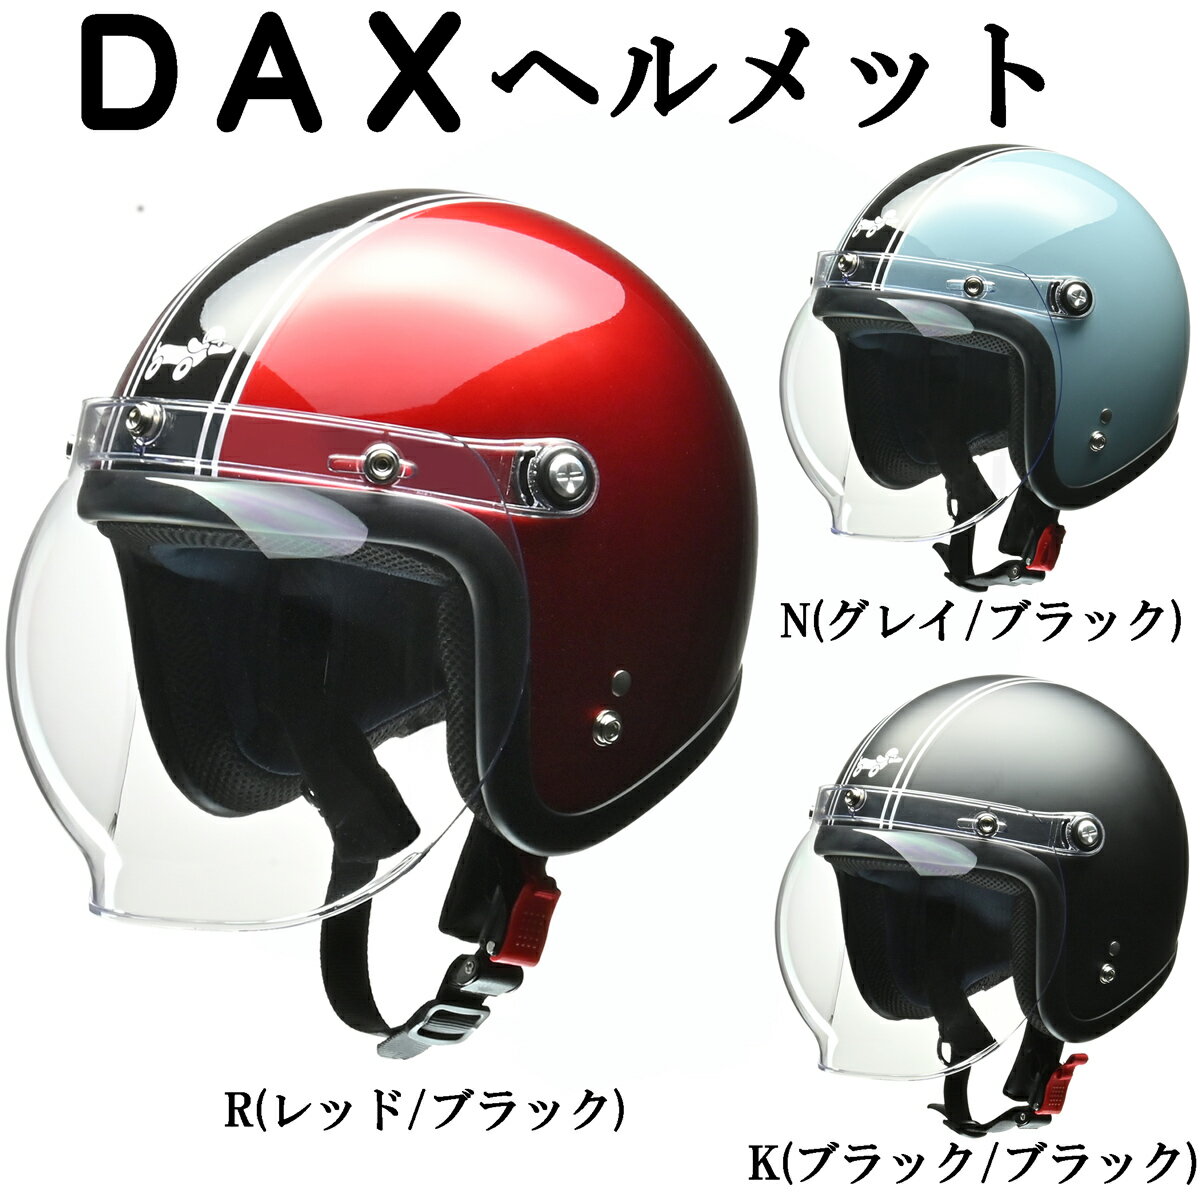 ヘルメット / ダックス DAXヘルメット ホンダ / 0SHGC-JC1D 全排気量対応